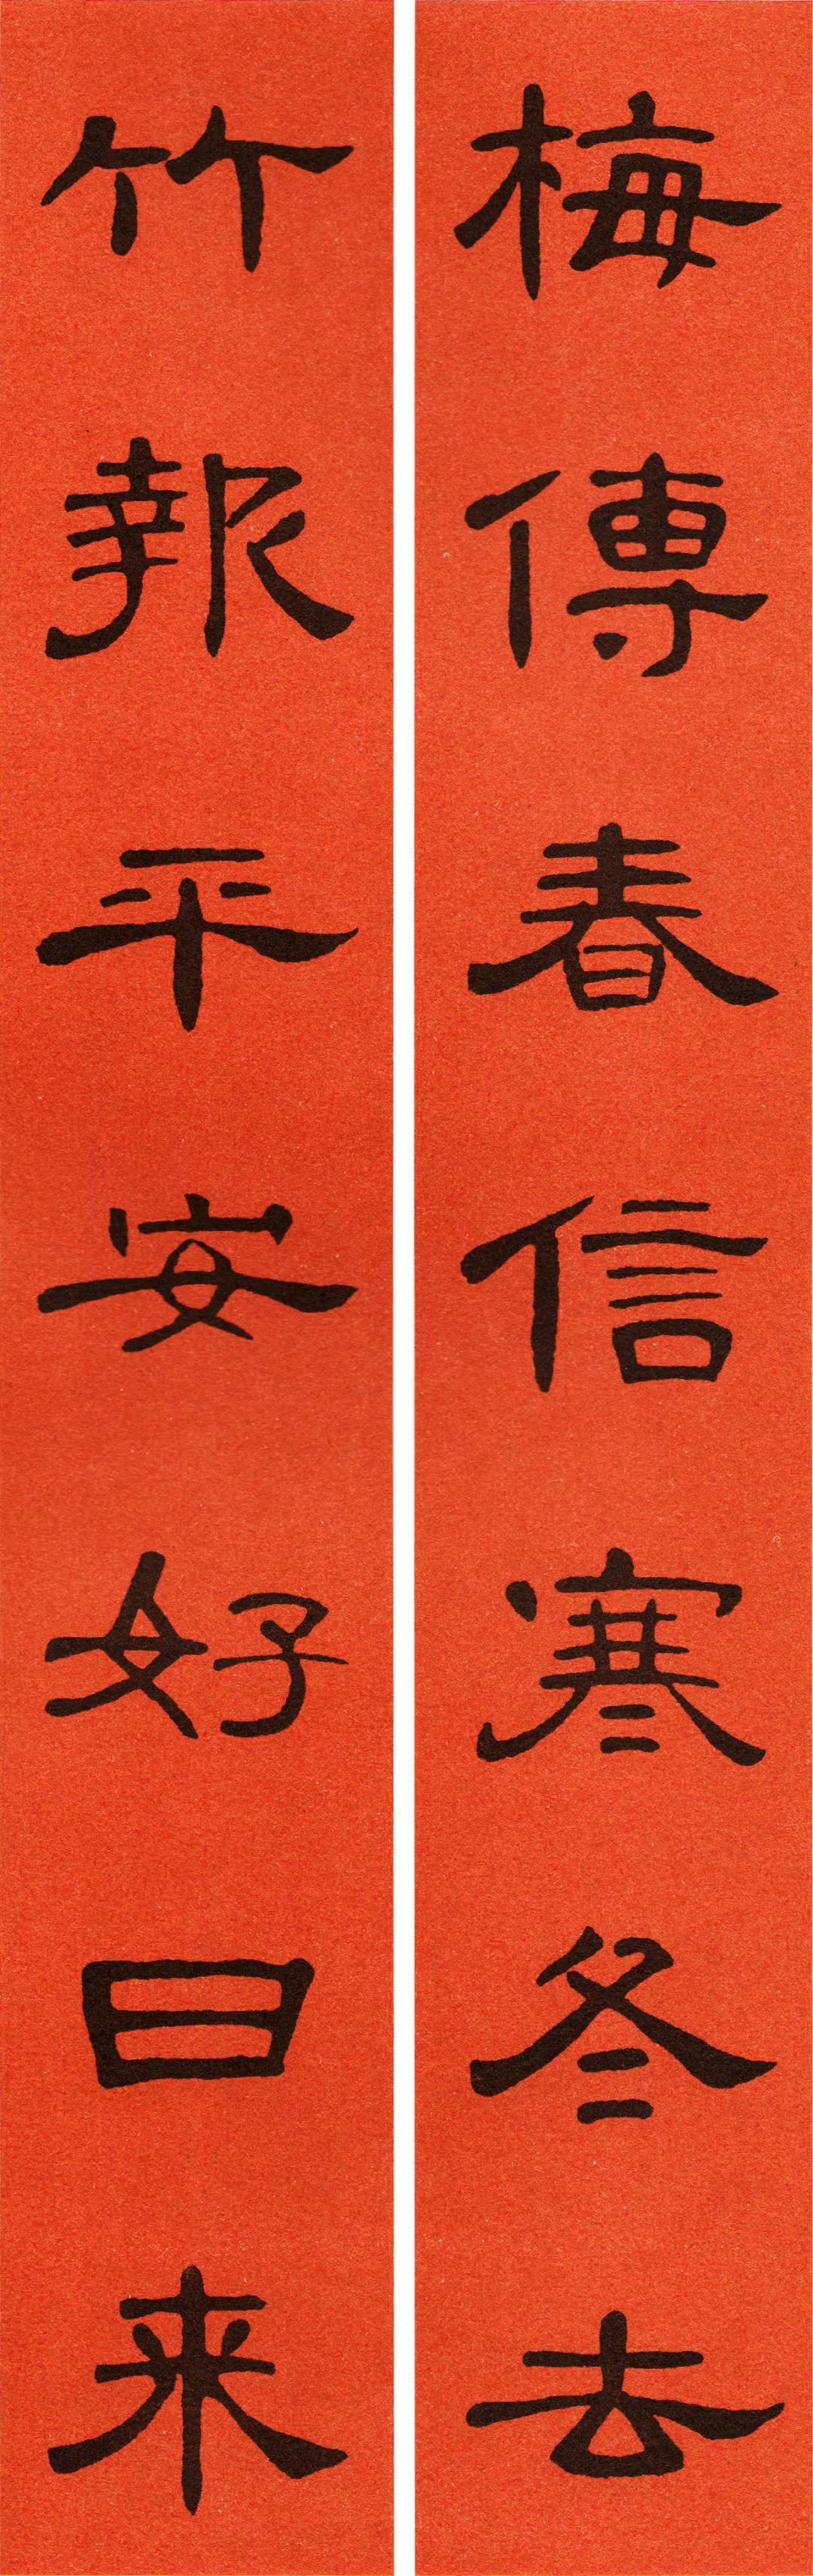 用笔方圆兼备,而以圆笔为主,风致翩翩,美妙多姿,是汉代隶书的代表作品